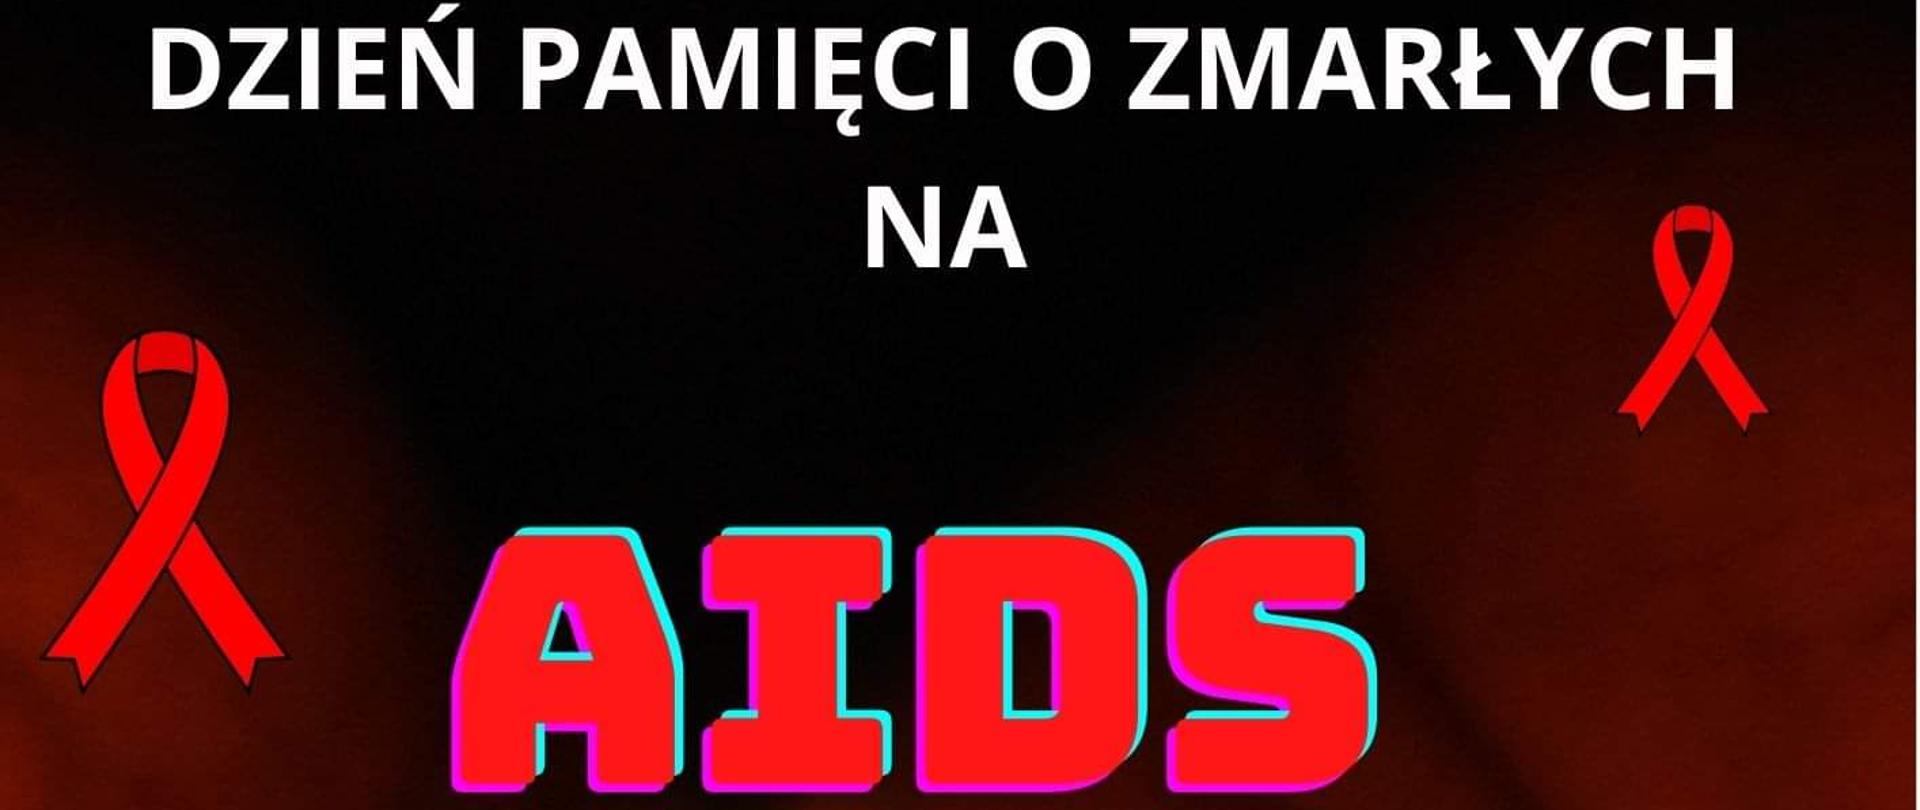 Dzień pamięci o zmarłych na AIDS